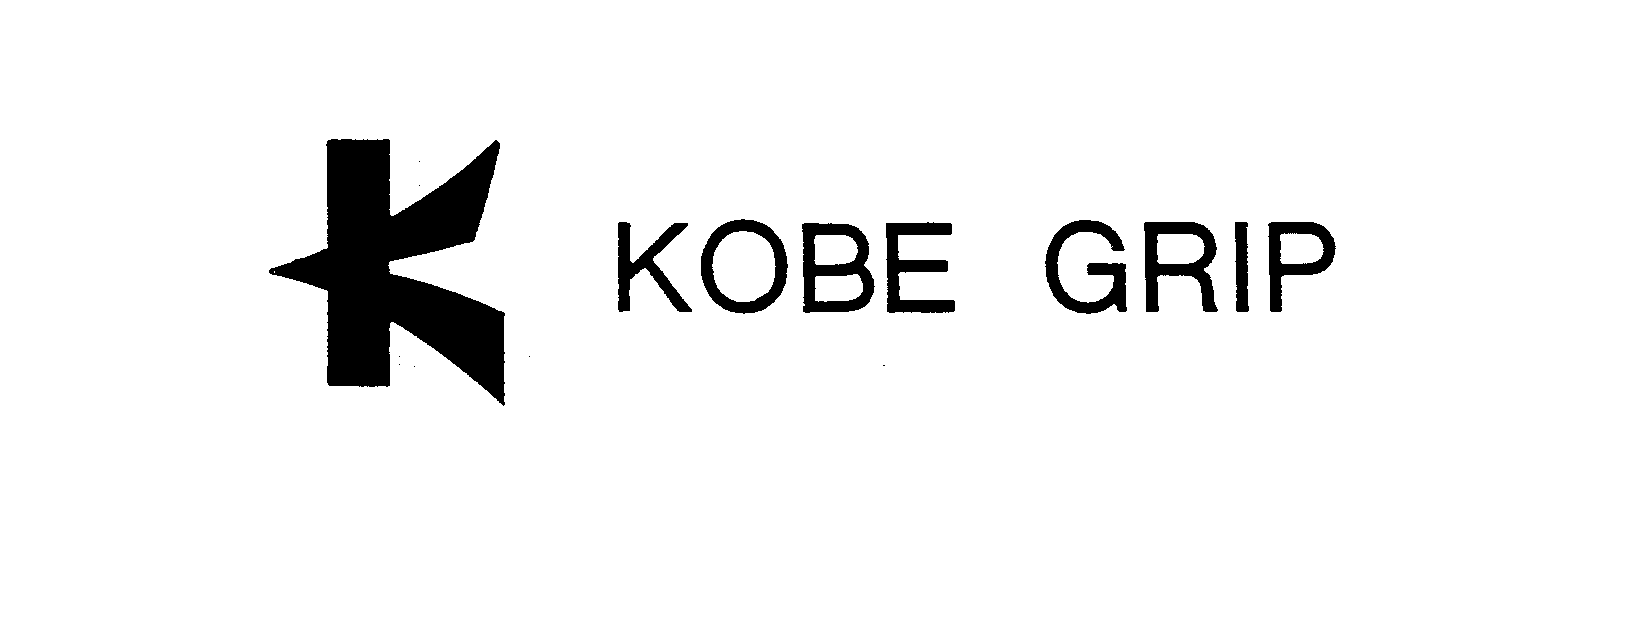 Trademark Logo KOBE GRIP